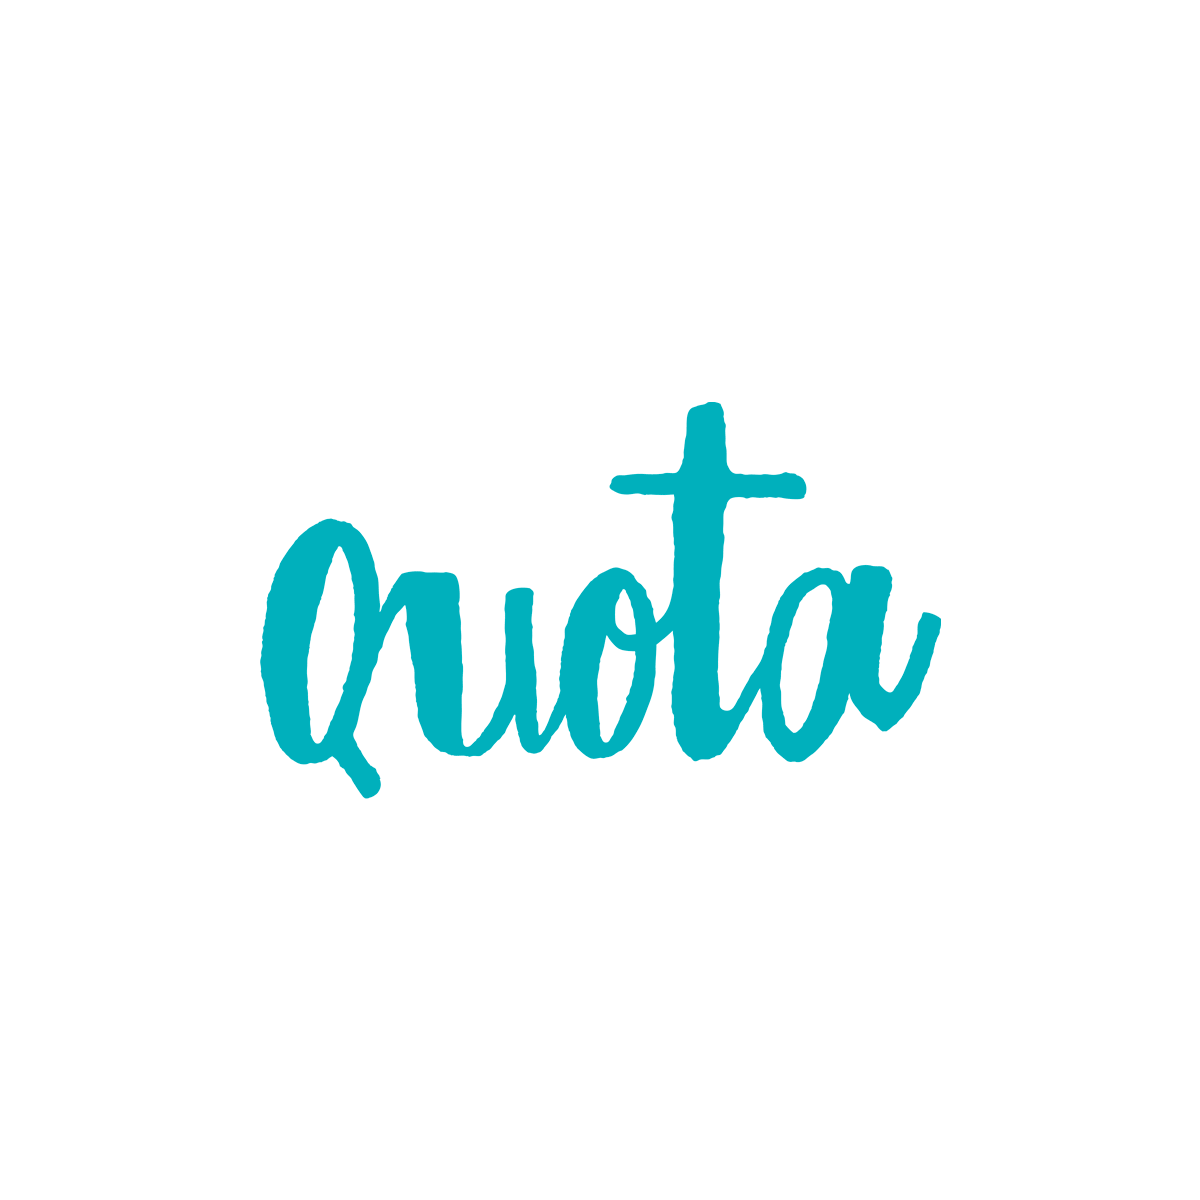 Quota Logo - Quota | Ilk Flottante